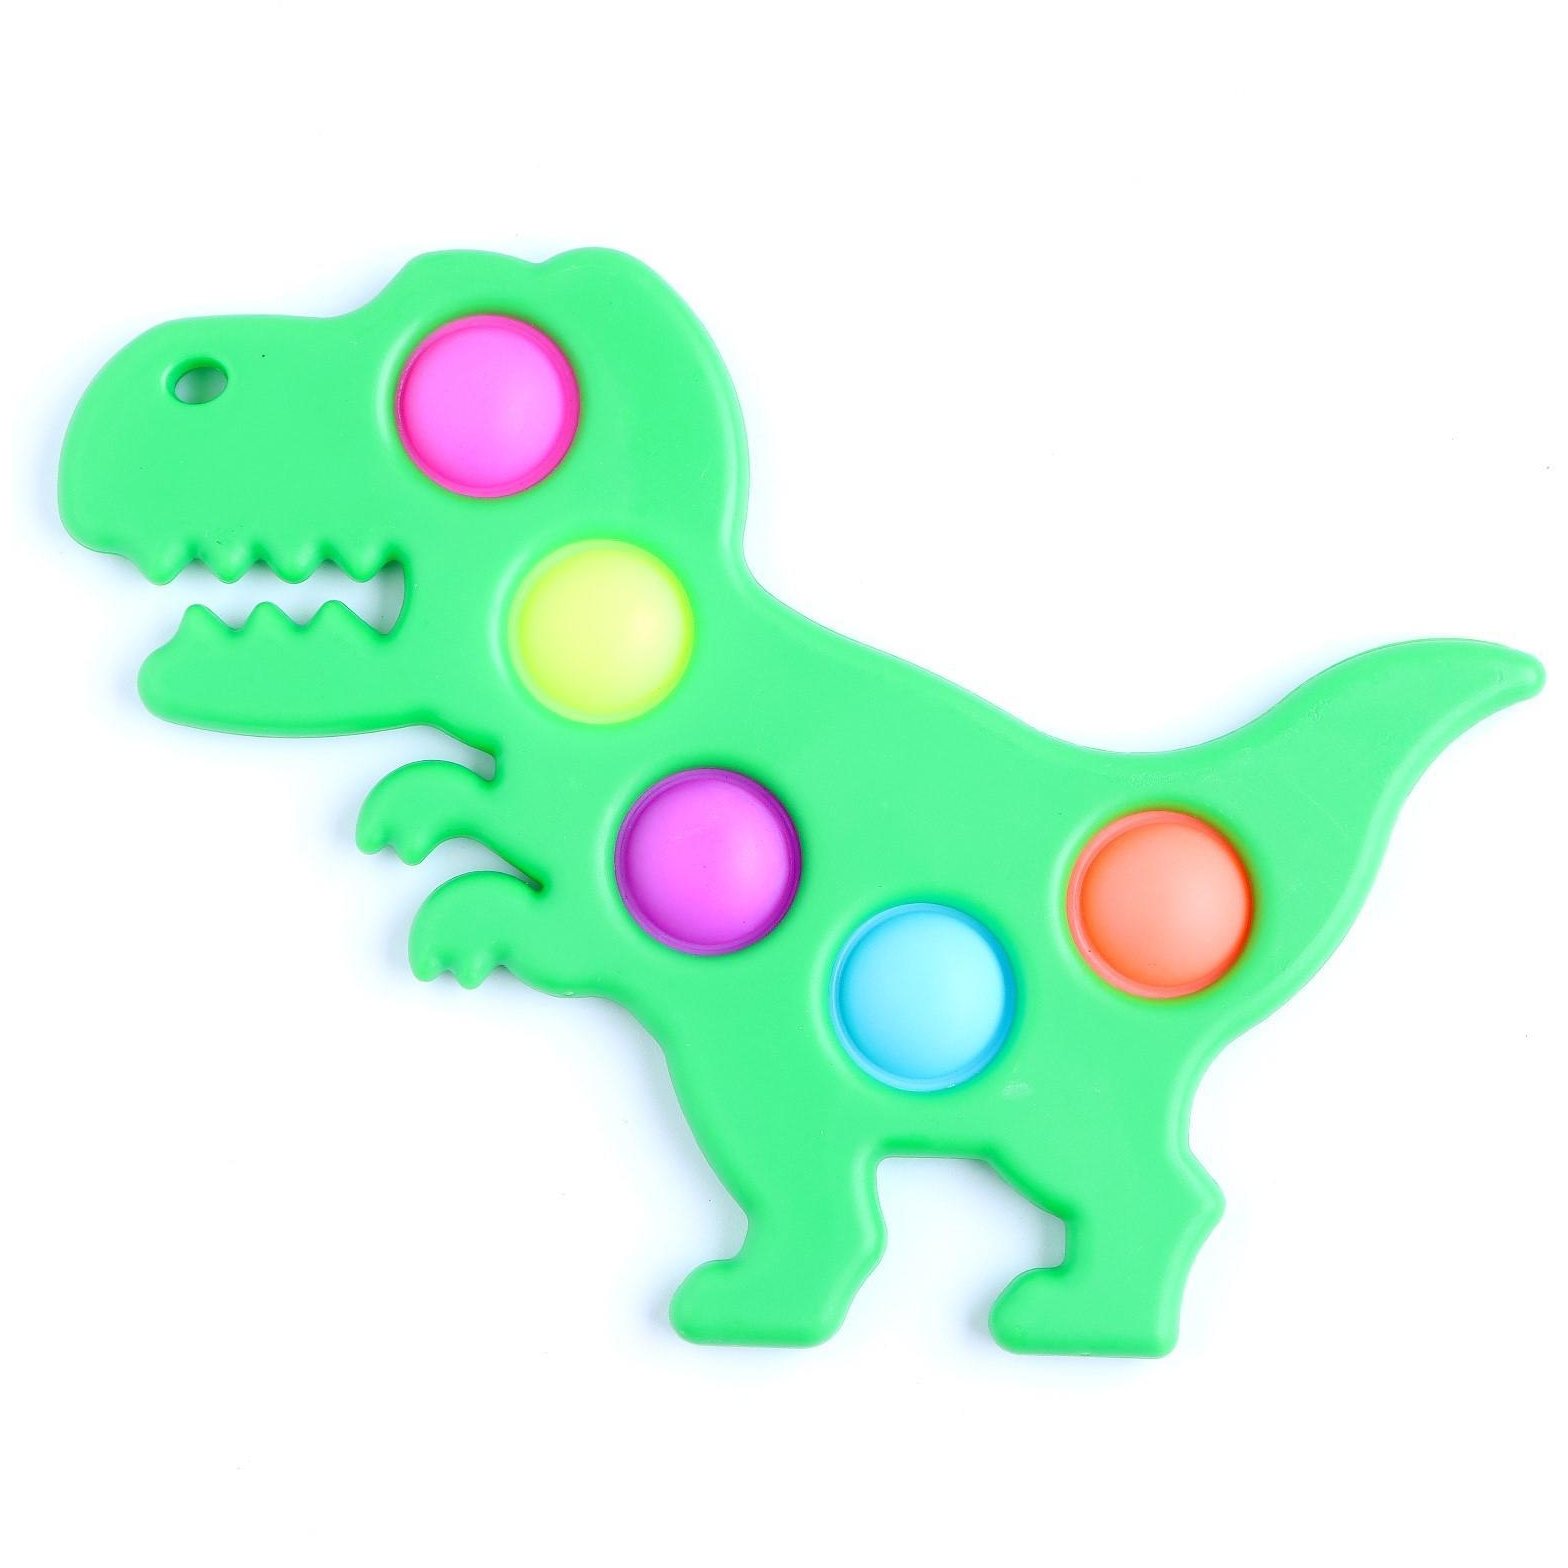 Тактильная сенсорная игрушка "Вечная пупырка" Симпл димпл, динозавр